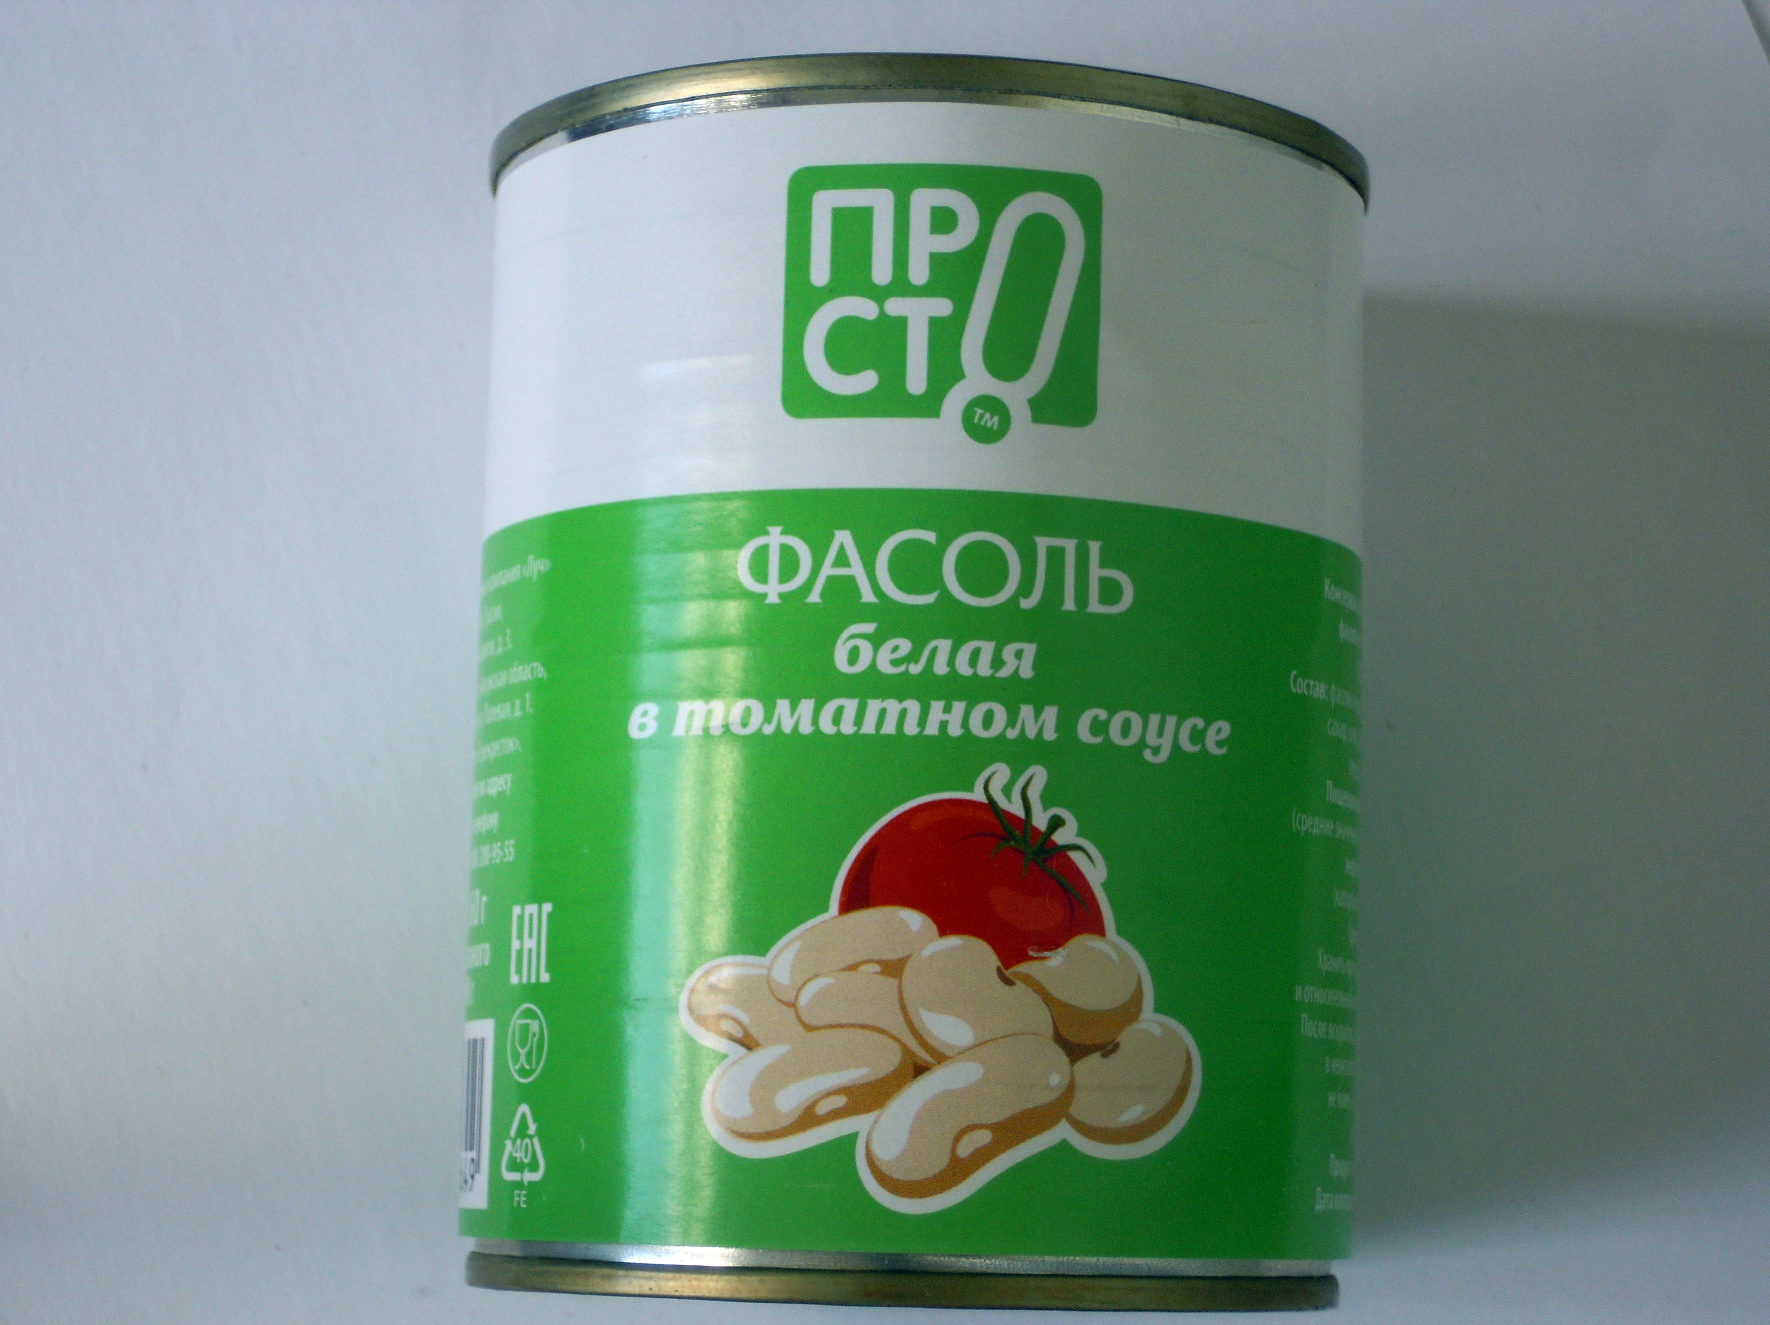 Фасоль белая в томатном соусе - Product - ru